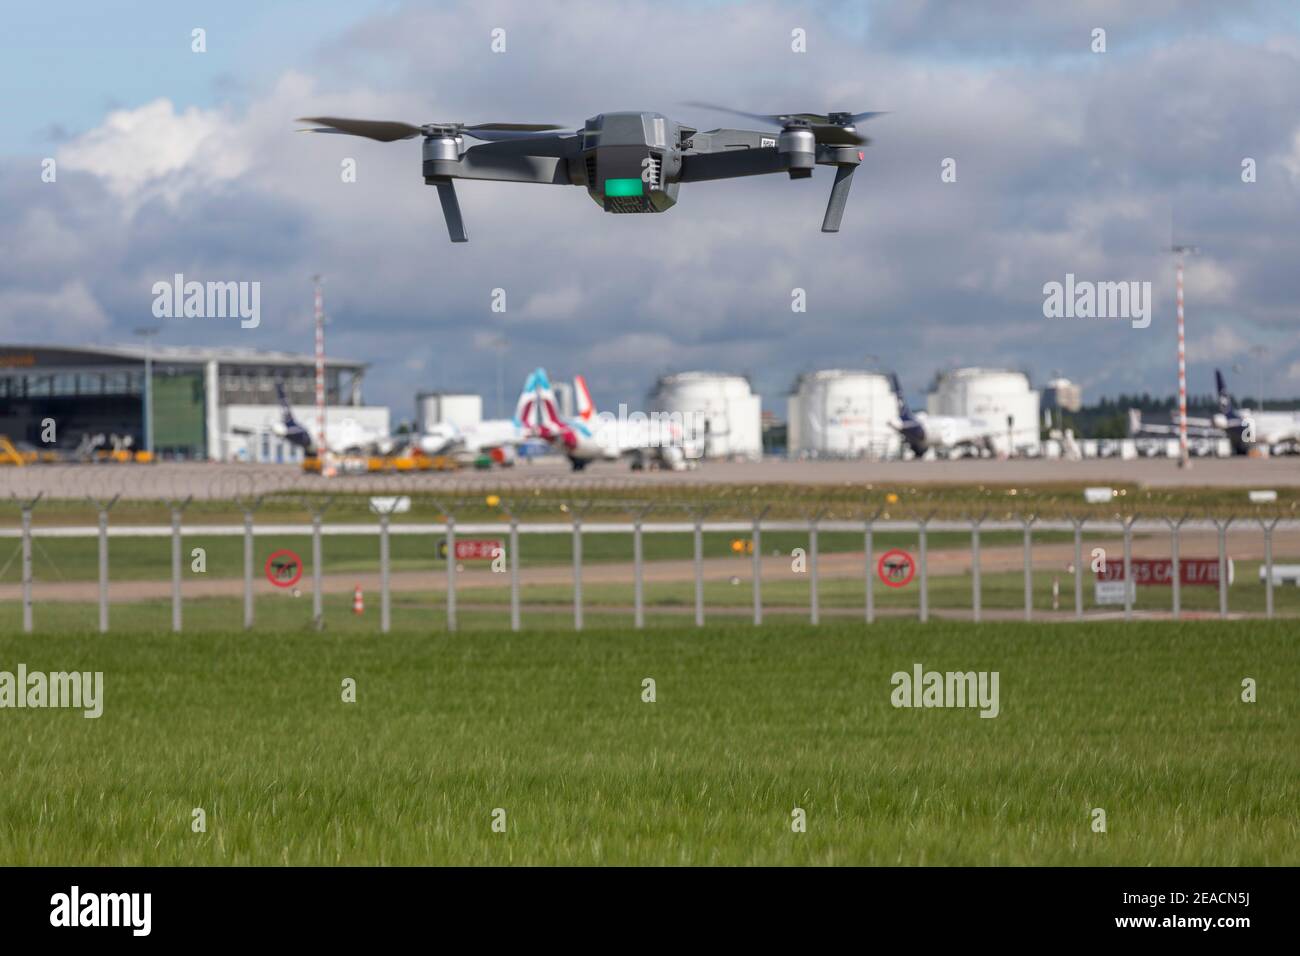 Le quadricoptère de drone s'approche de la zone d'interdiction intérieure des locaux de l'aéroport, de la piste, des réservoirs de kérosène, de l'avion Banque D'Images